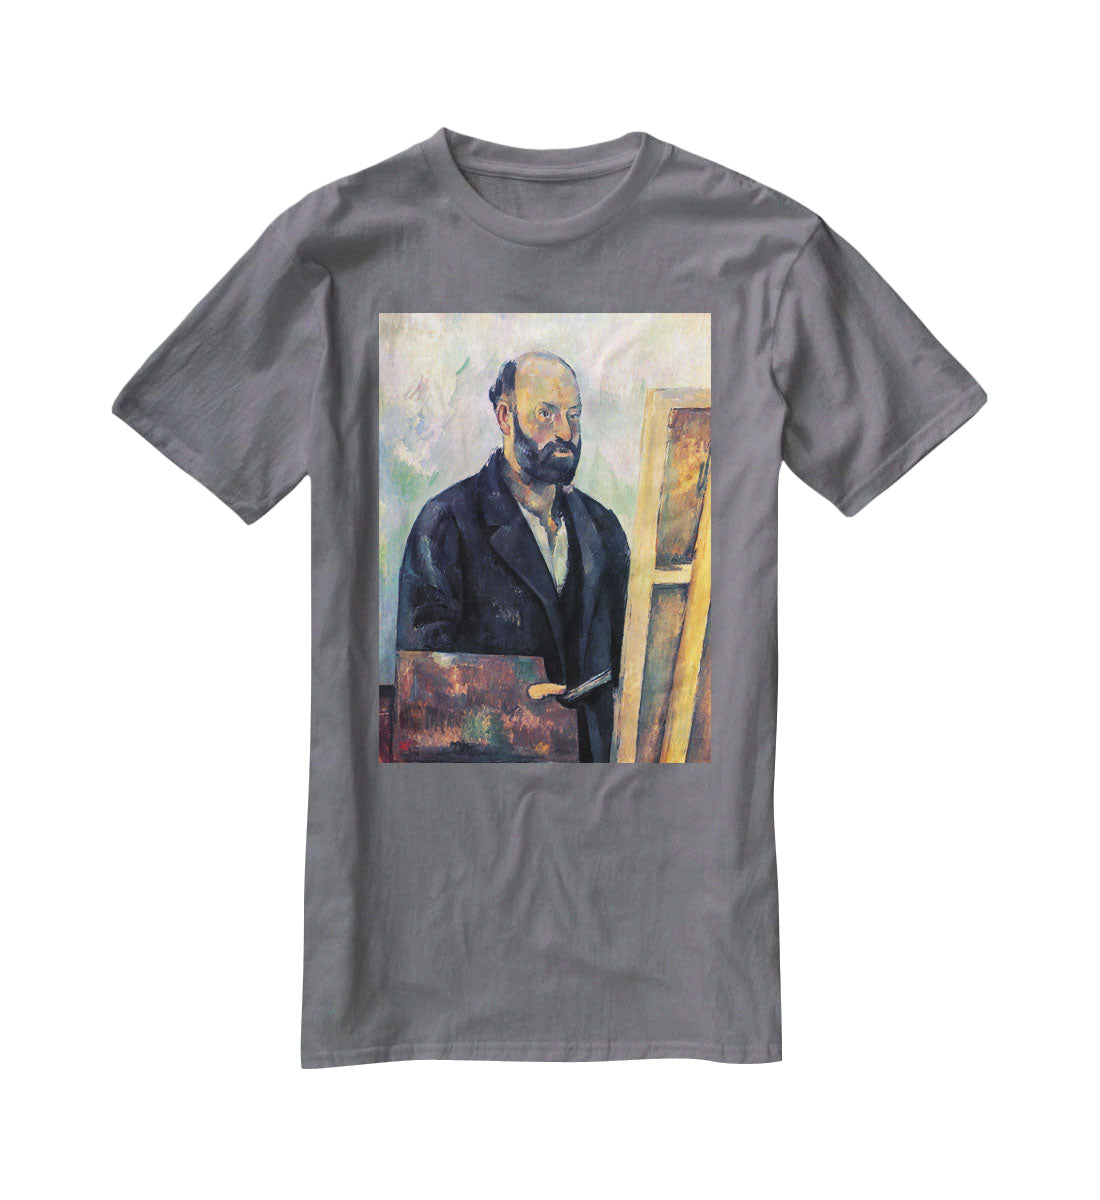 Self-portrait with Pallette by Cezanne T-Shirt - Canvas Art Rocks - 3